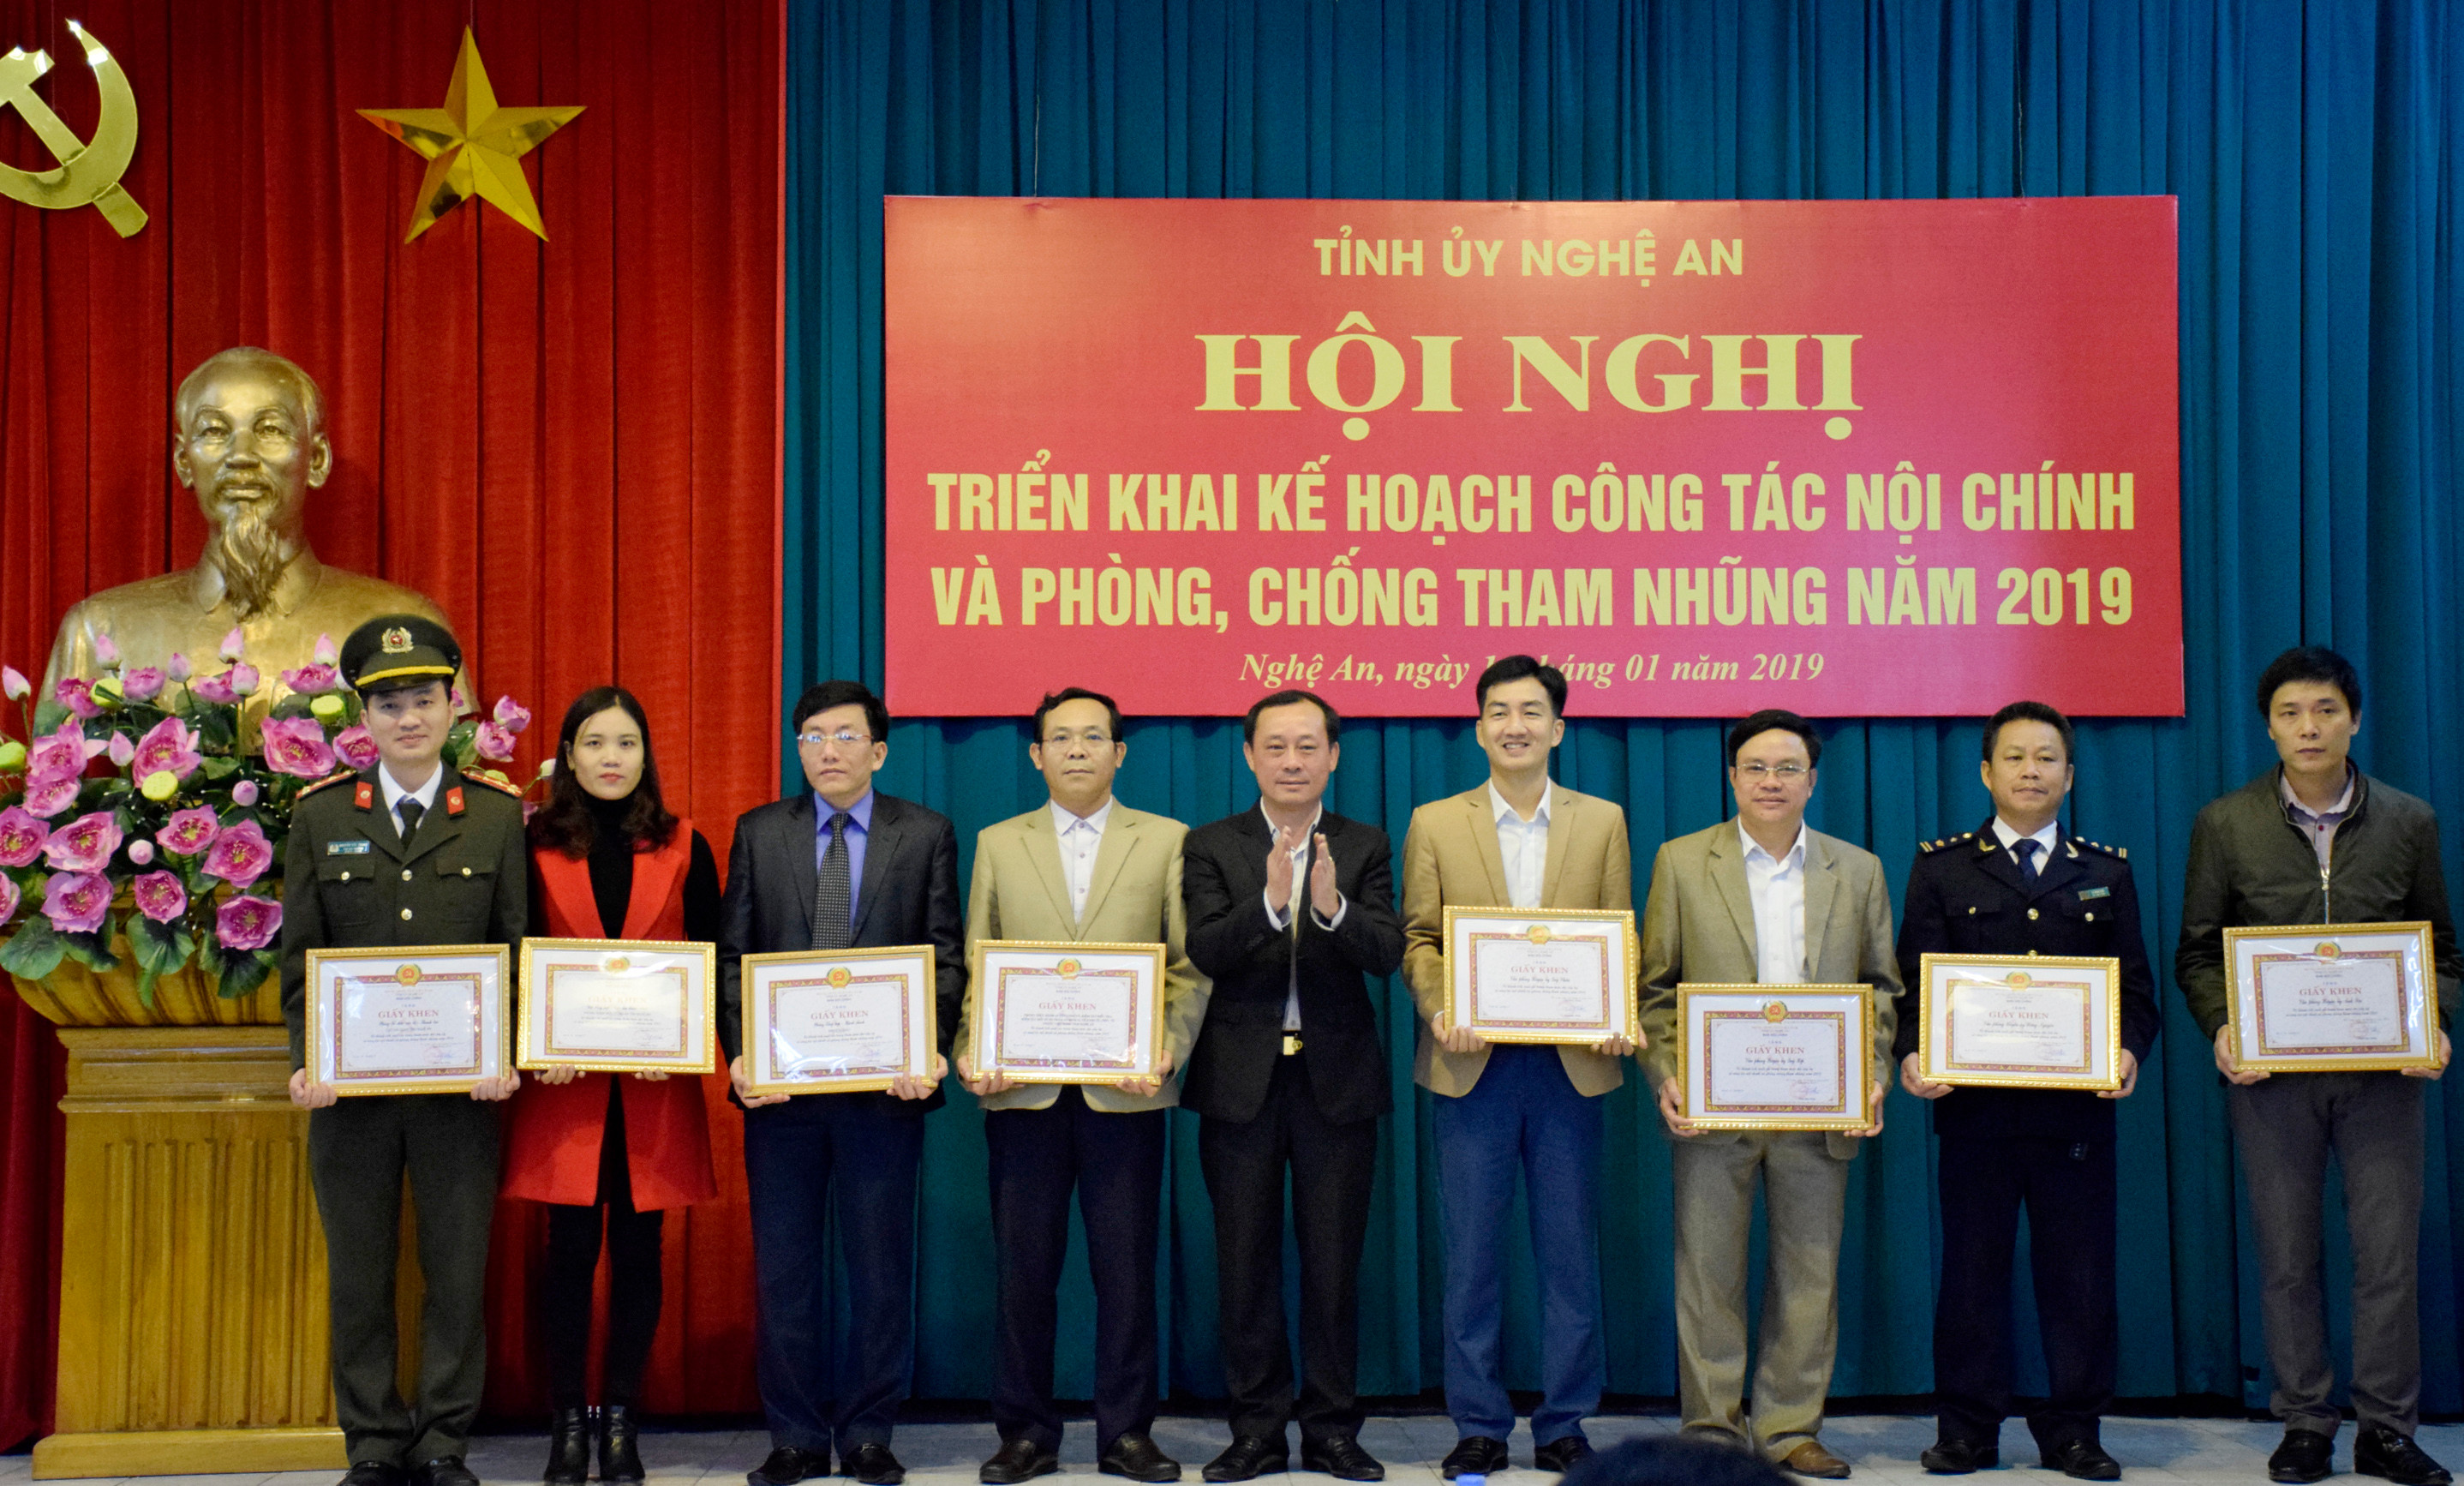 Đồng chí Phan Đức Đồng - Trưởng Ban Nội chính Tỉnh ủy tặng giấy khen cho các đơn vị có thành tích trong công tác nội chính và phóng chống tham nhũng năm 2018. Ảnh: Phạm Bằng